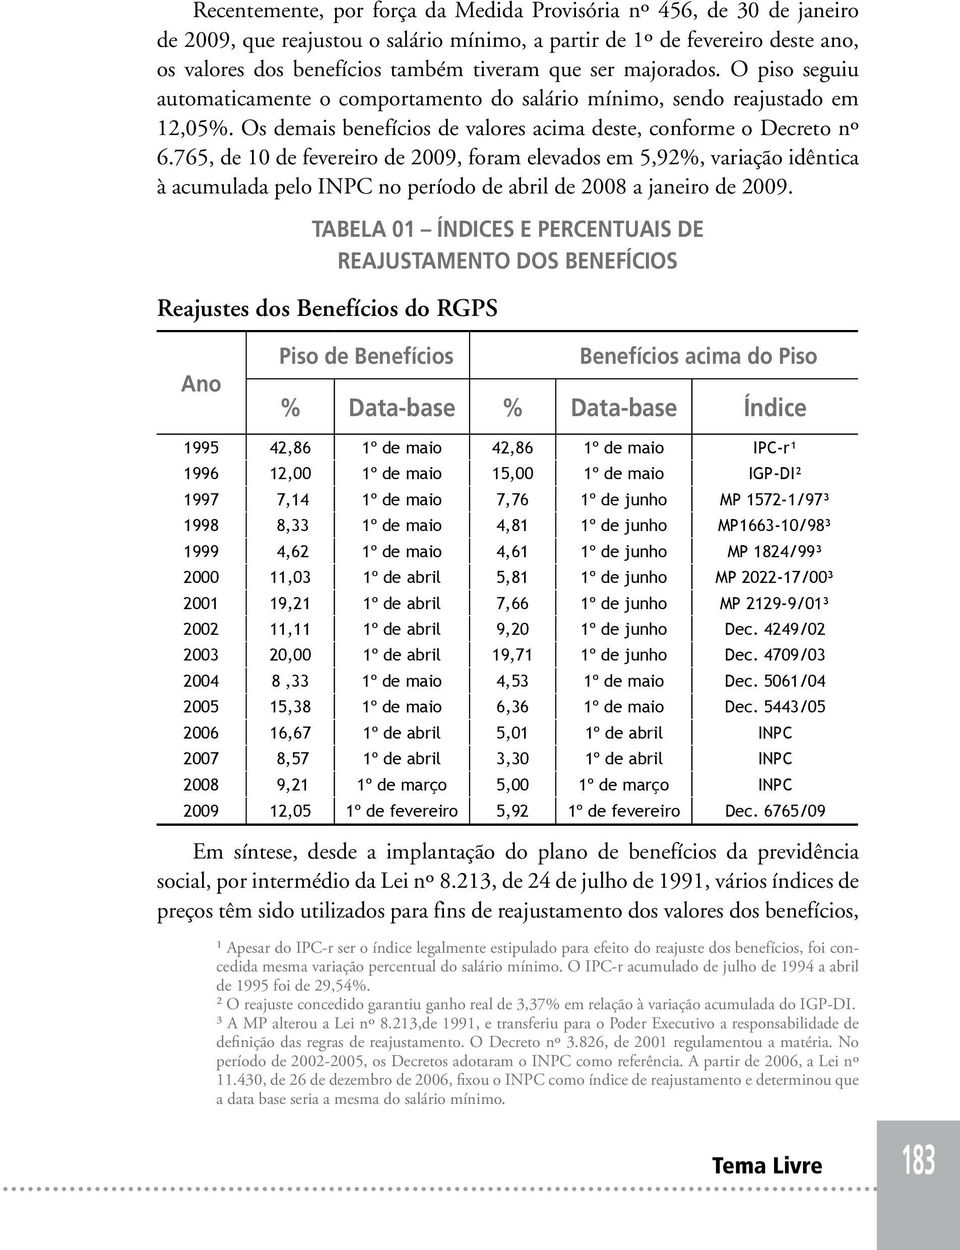 765, de 10 de fevereiro de 2009, foram elevados em 5,92%, variação idêntica à acumulada pelo INPC no período de abril de 2008 a janeiro de 2009.